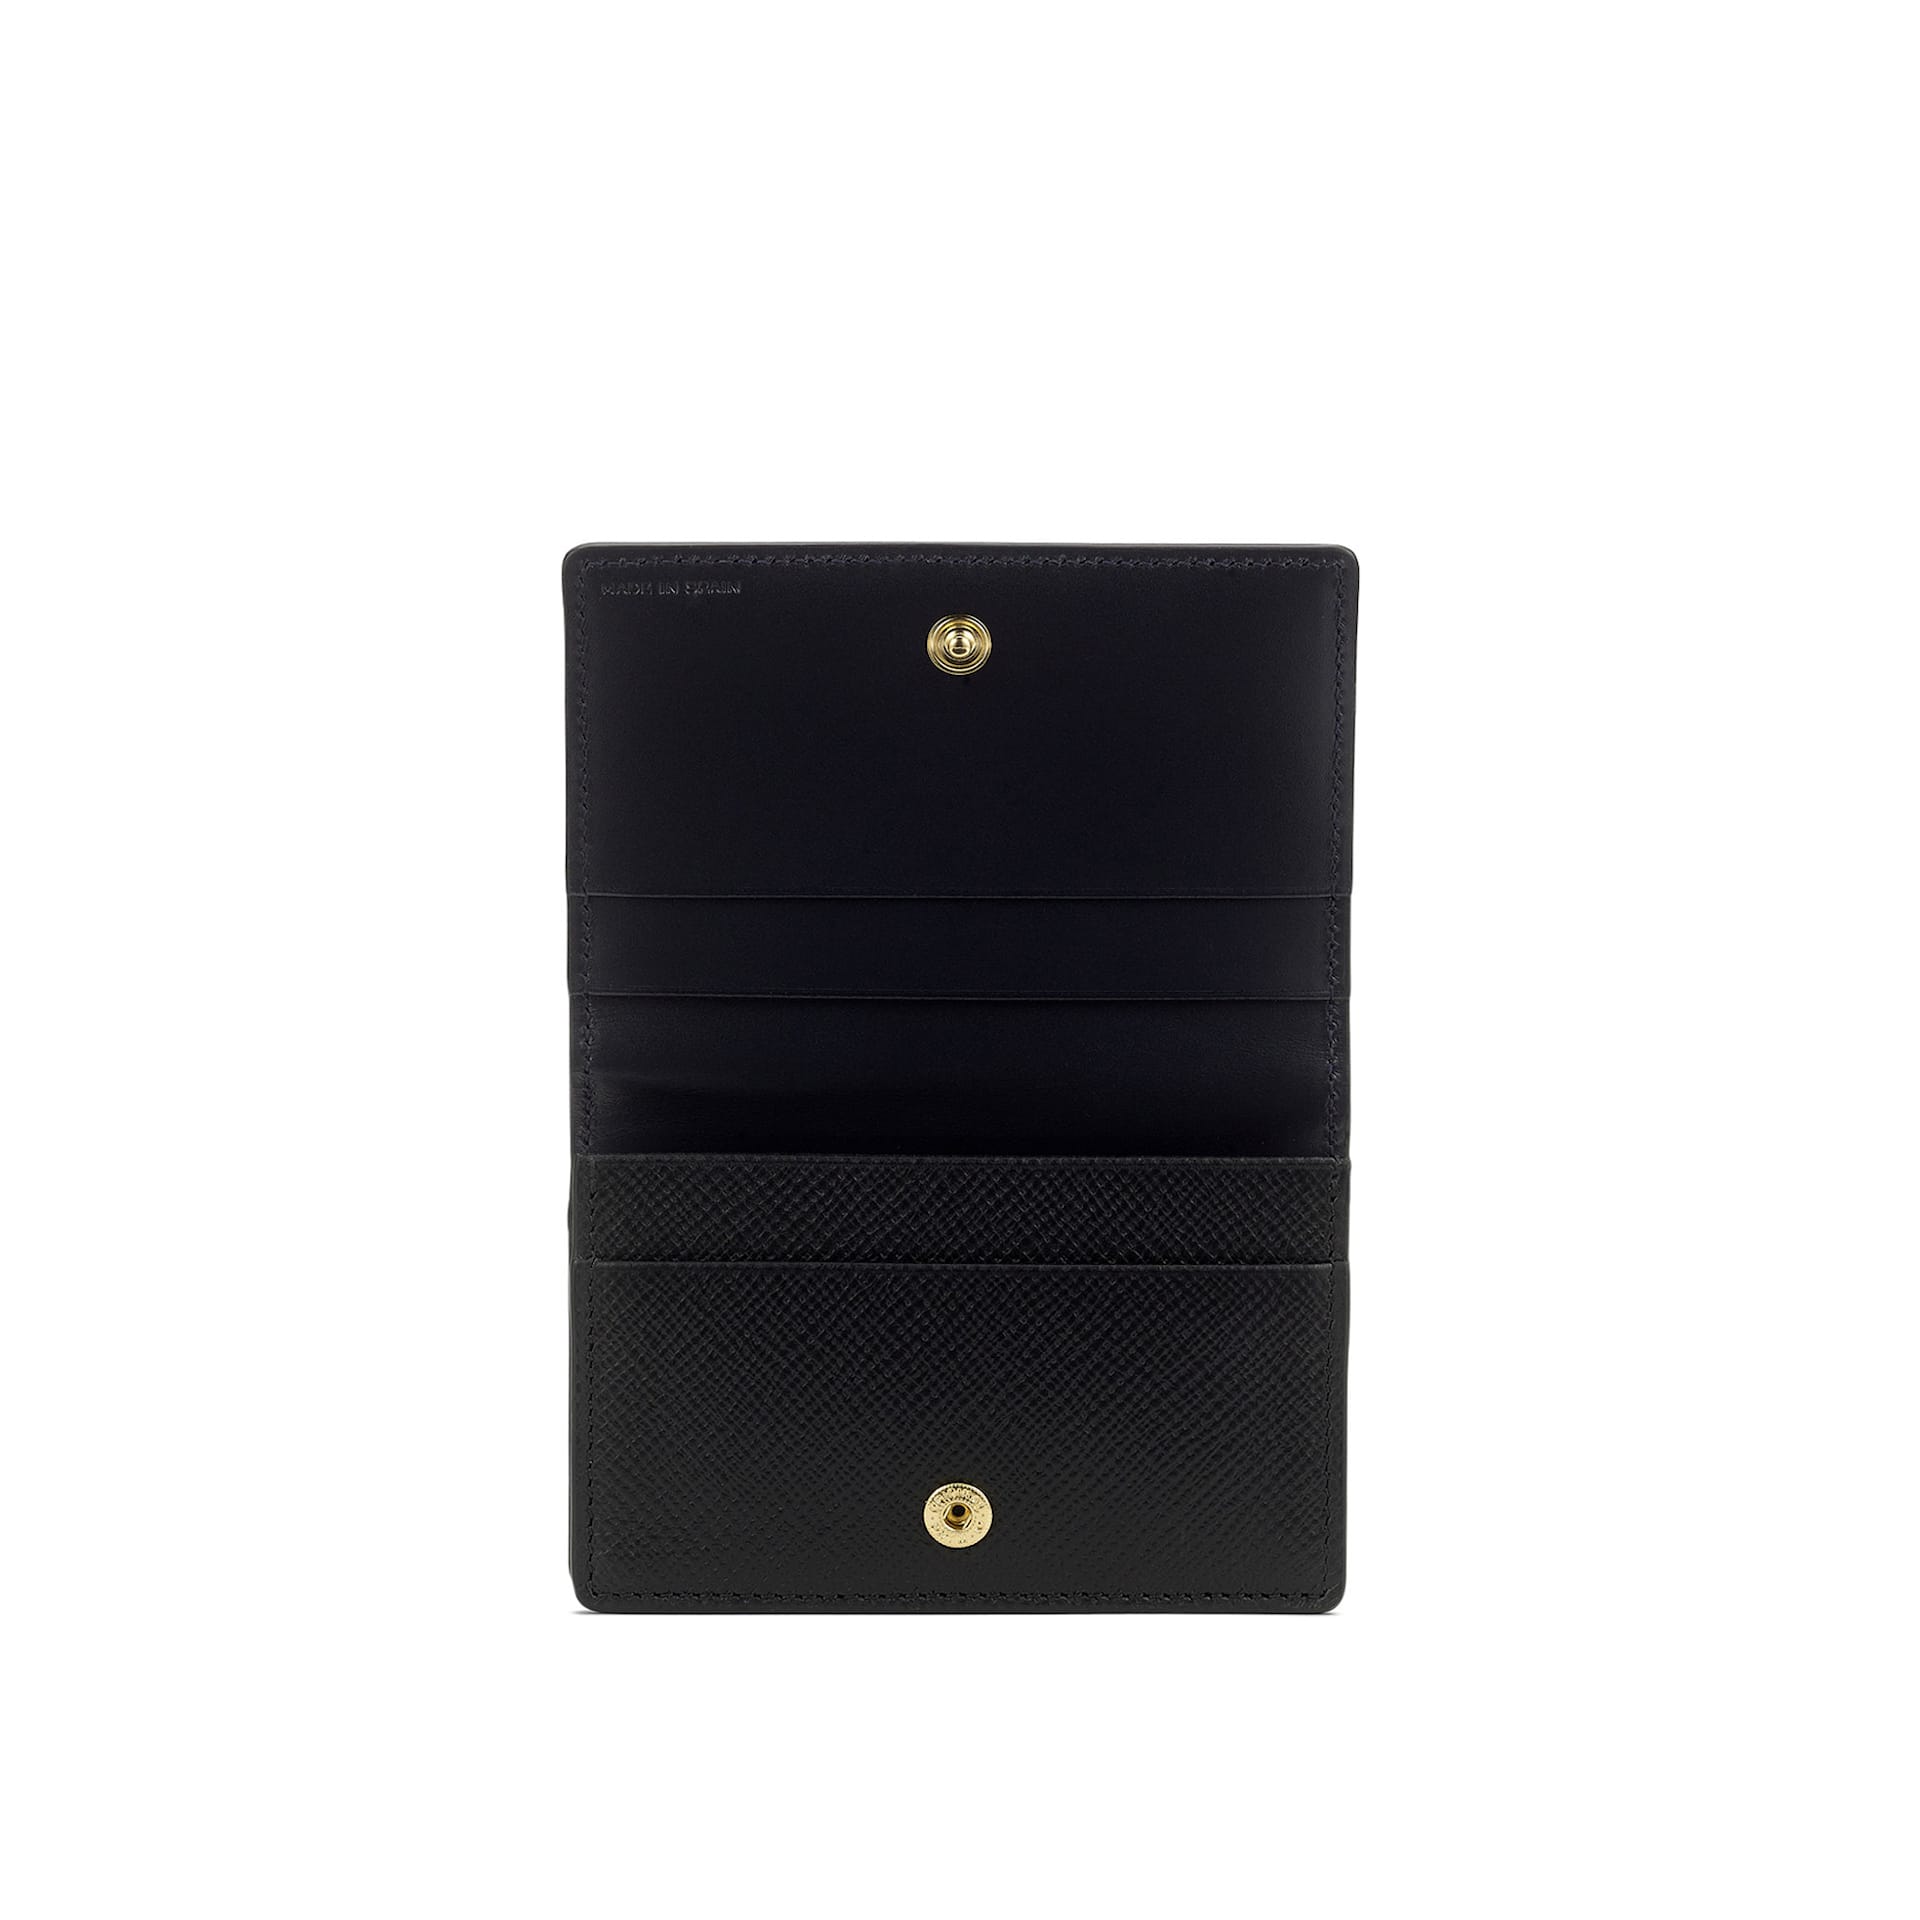 Panama Folded Card Holder - Black - Smythson - NO GA